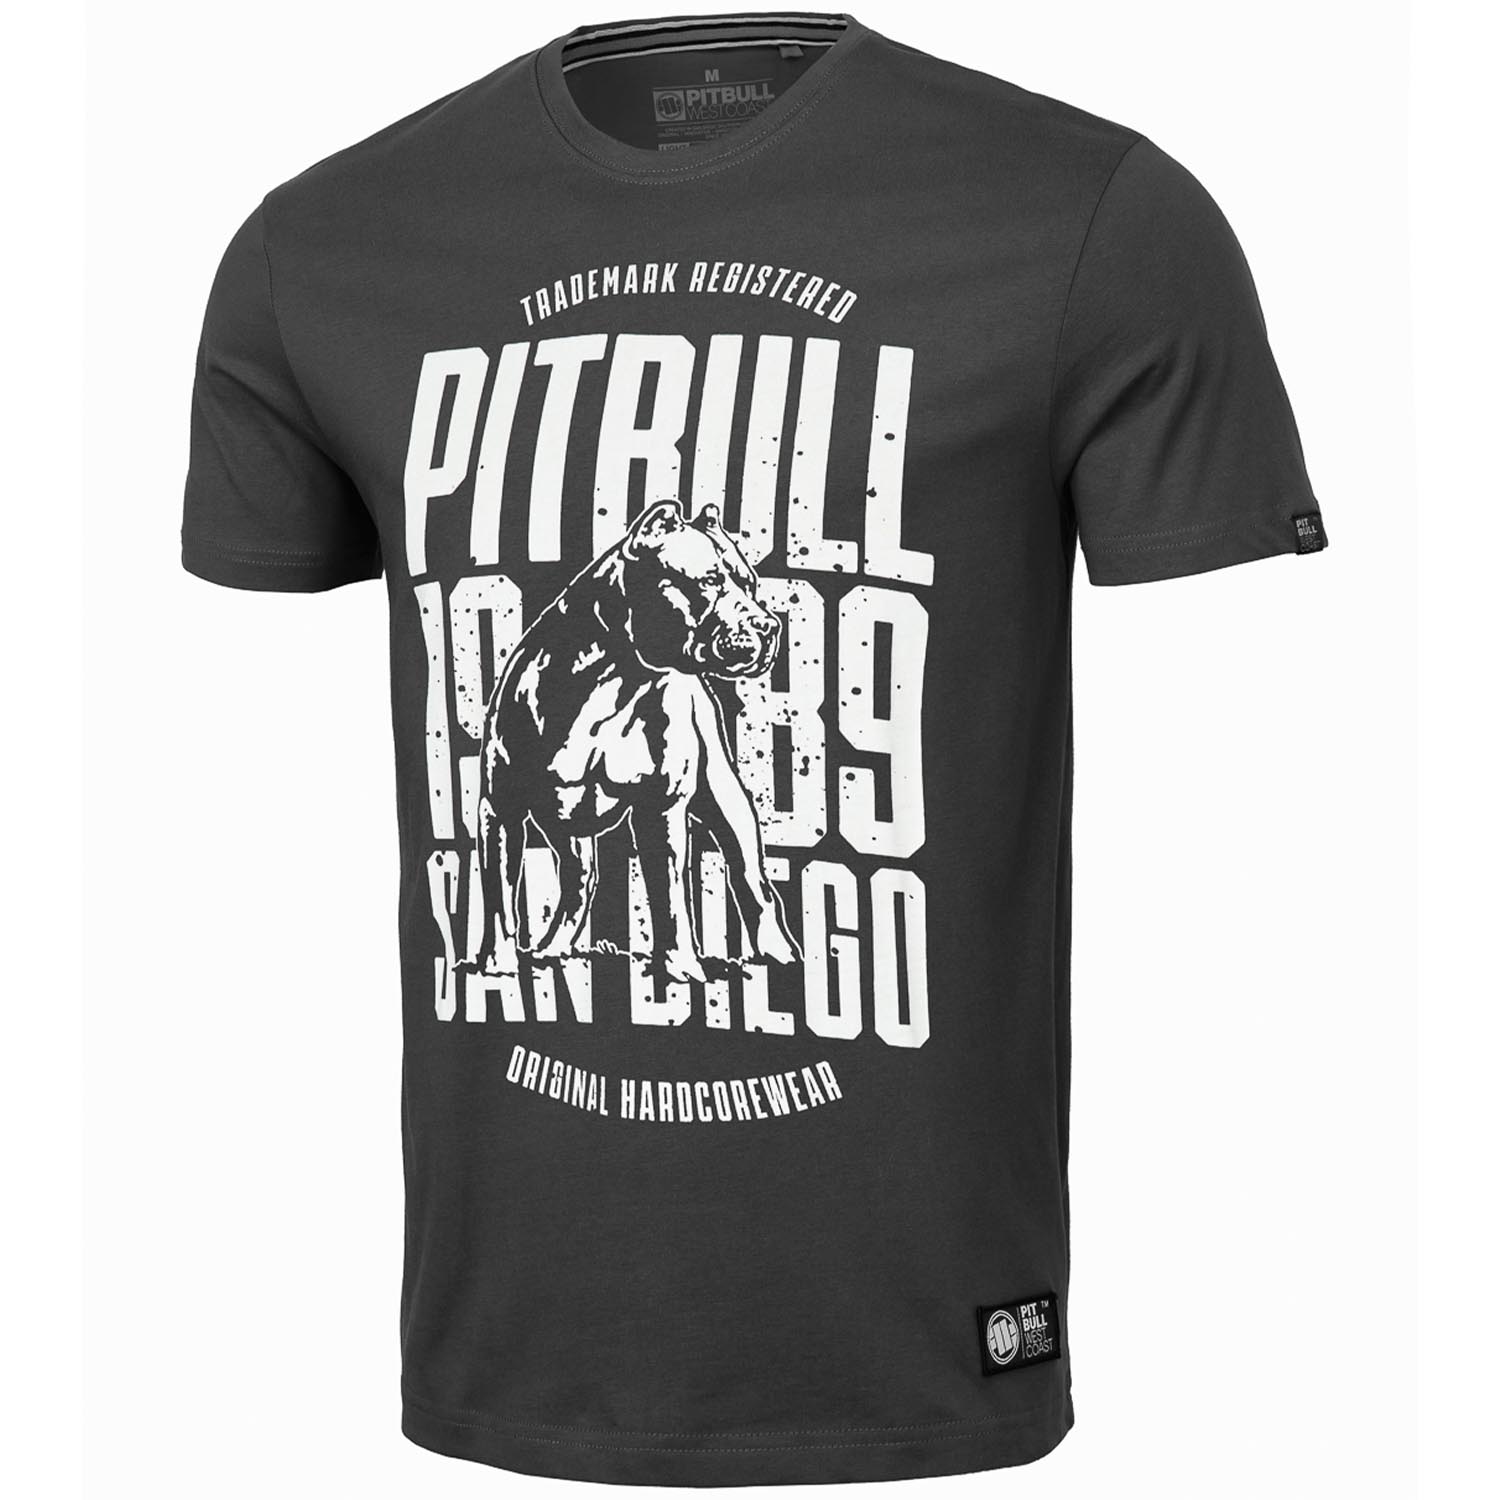 Pit Bull West Coast T-Shirt, San Diego Dog, grey